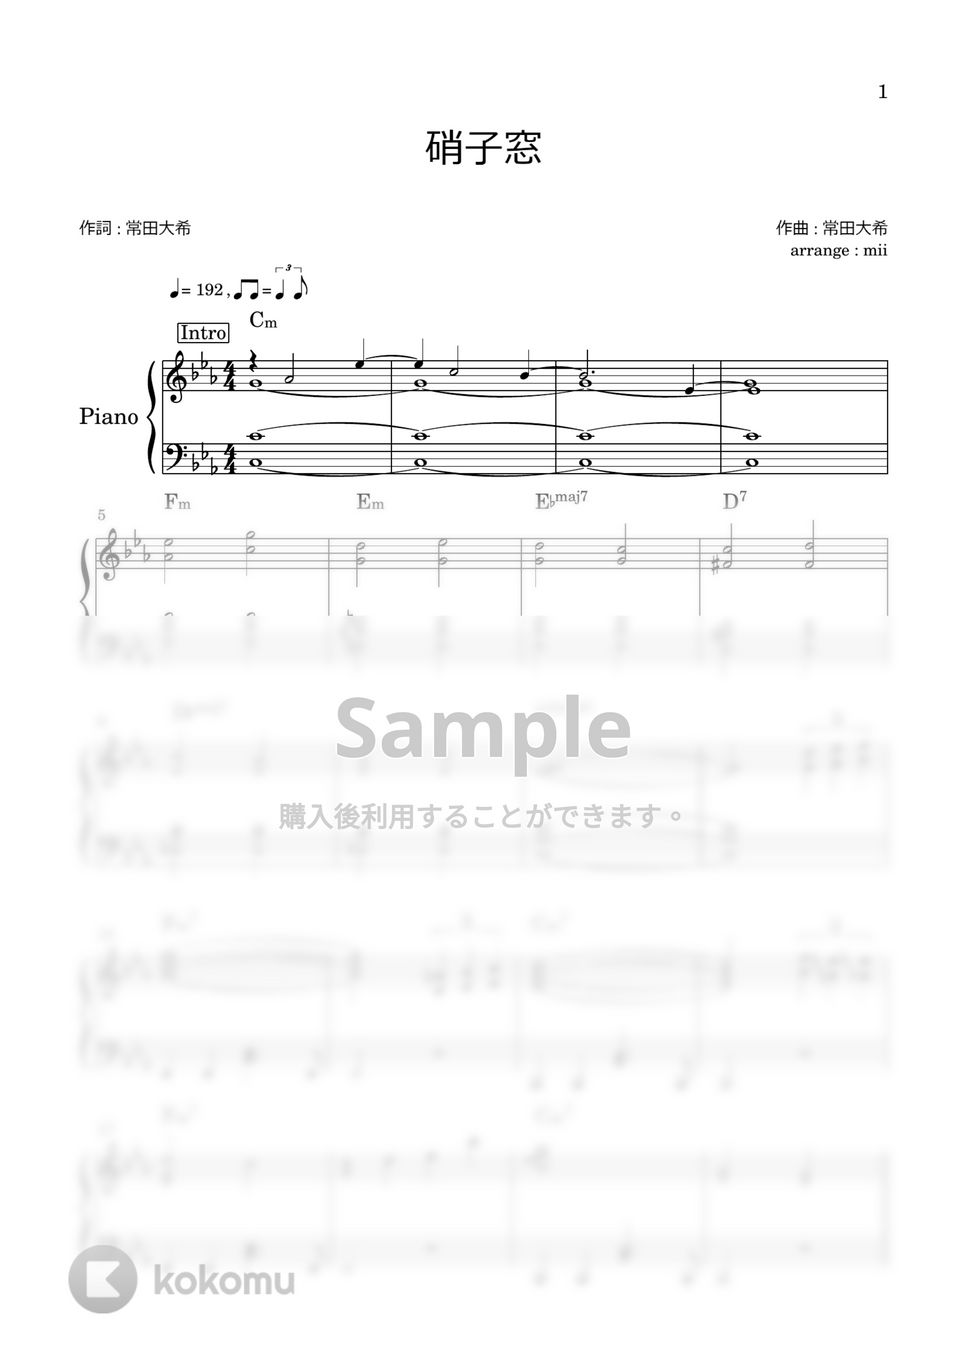 King Gnu - 硝子窓 by miiの楽譜棚